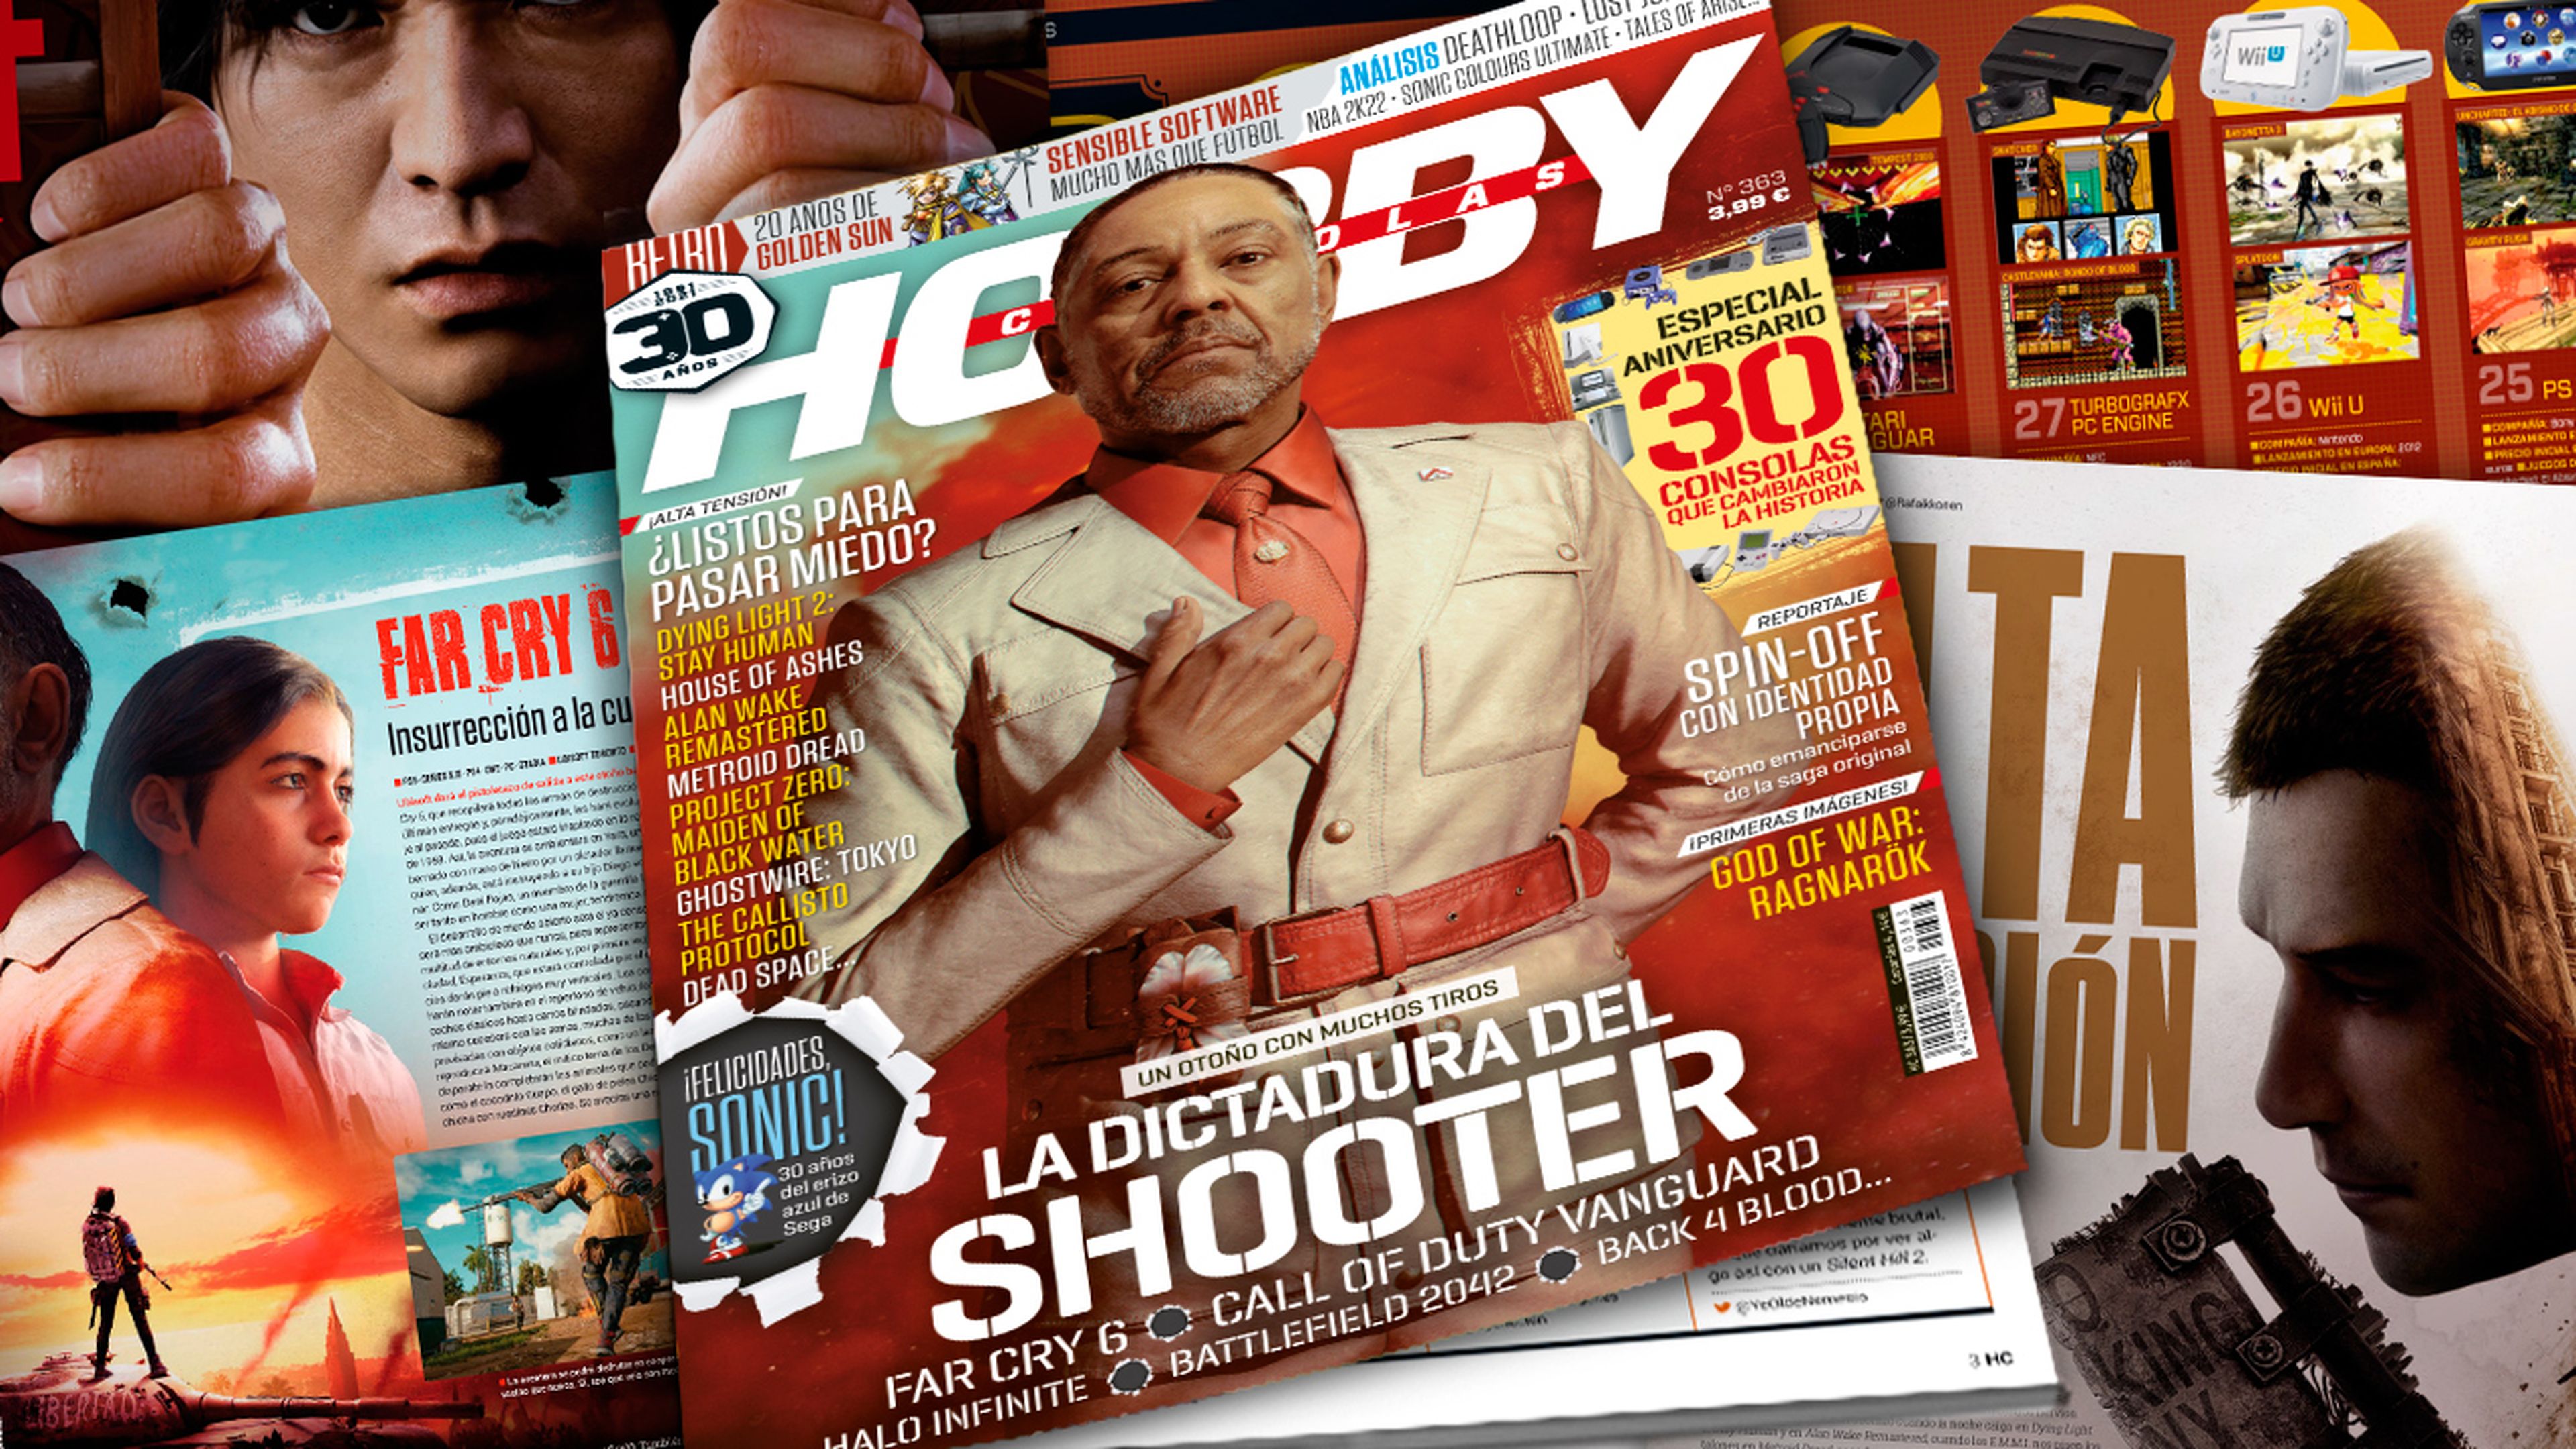 Hobby Consolas 363, a la venta con la dictadura de Far Cry 6 y otros shooters en portada